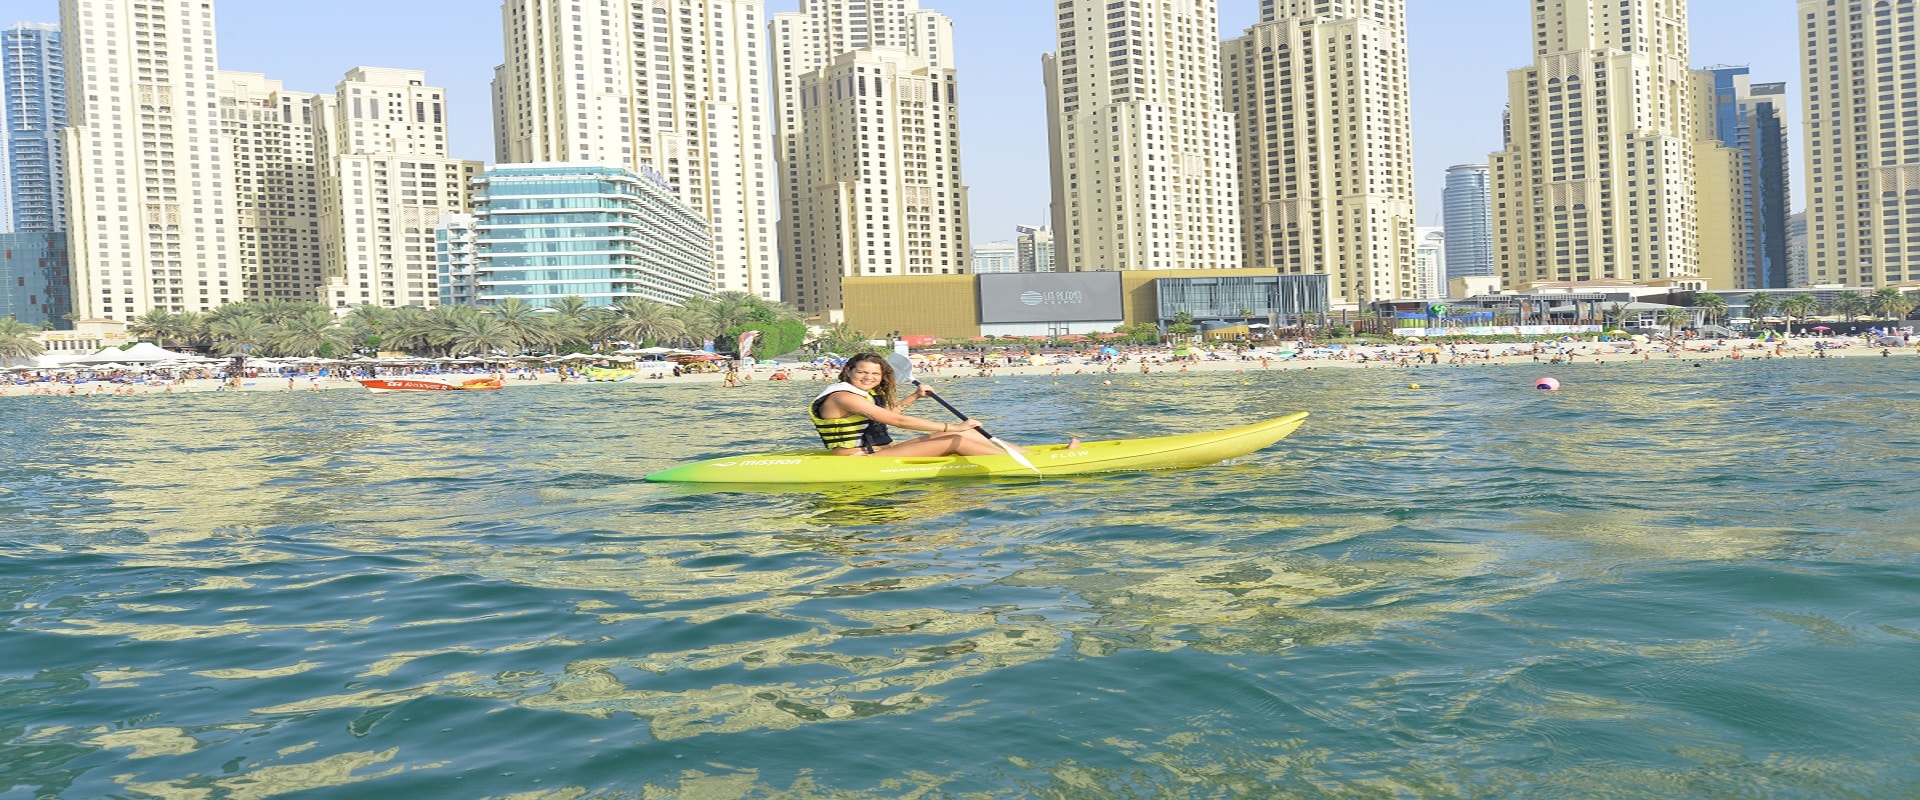 Kayaking Ku Dubai